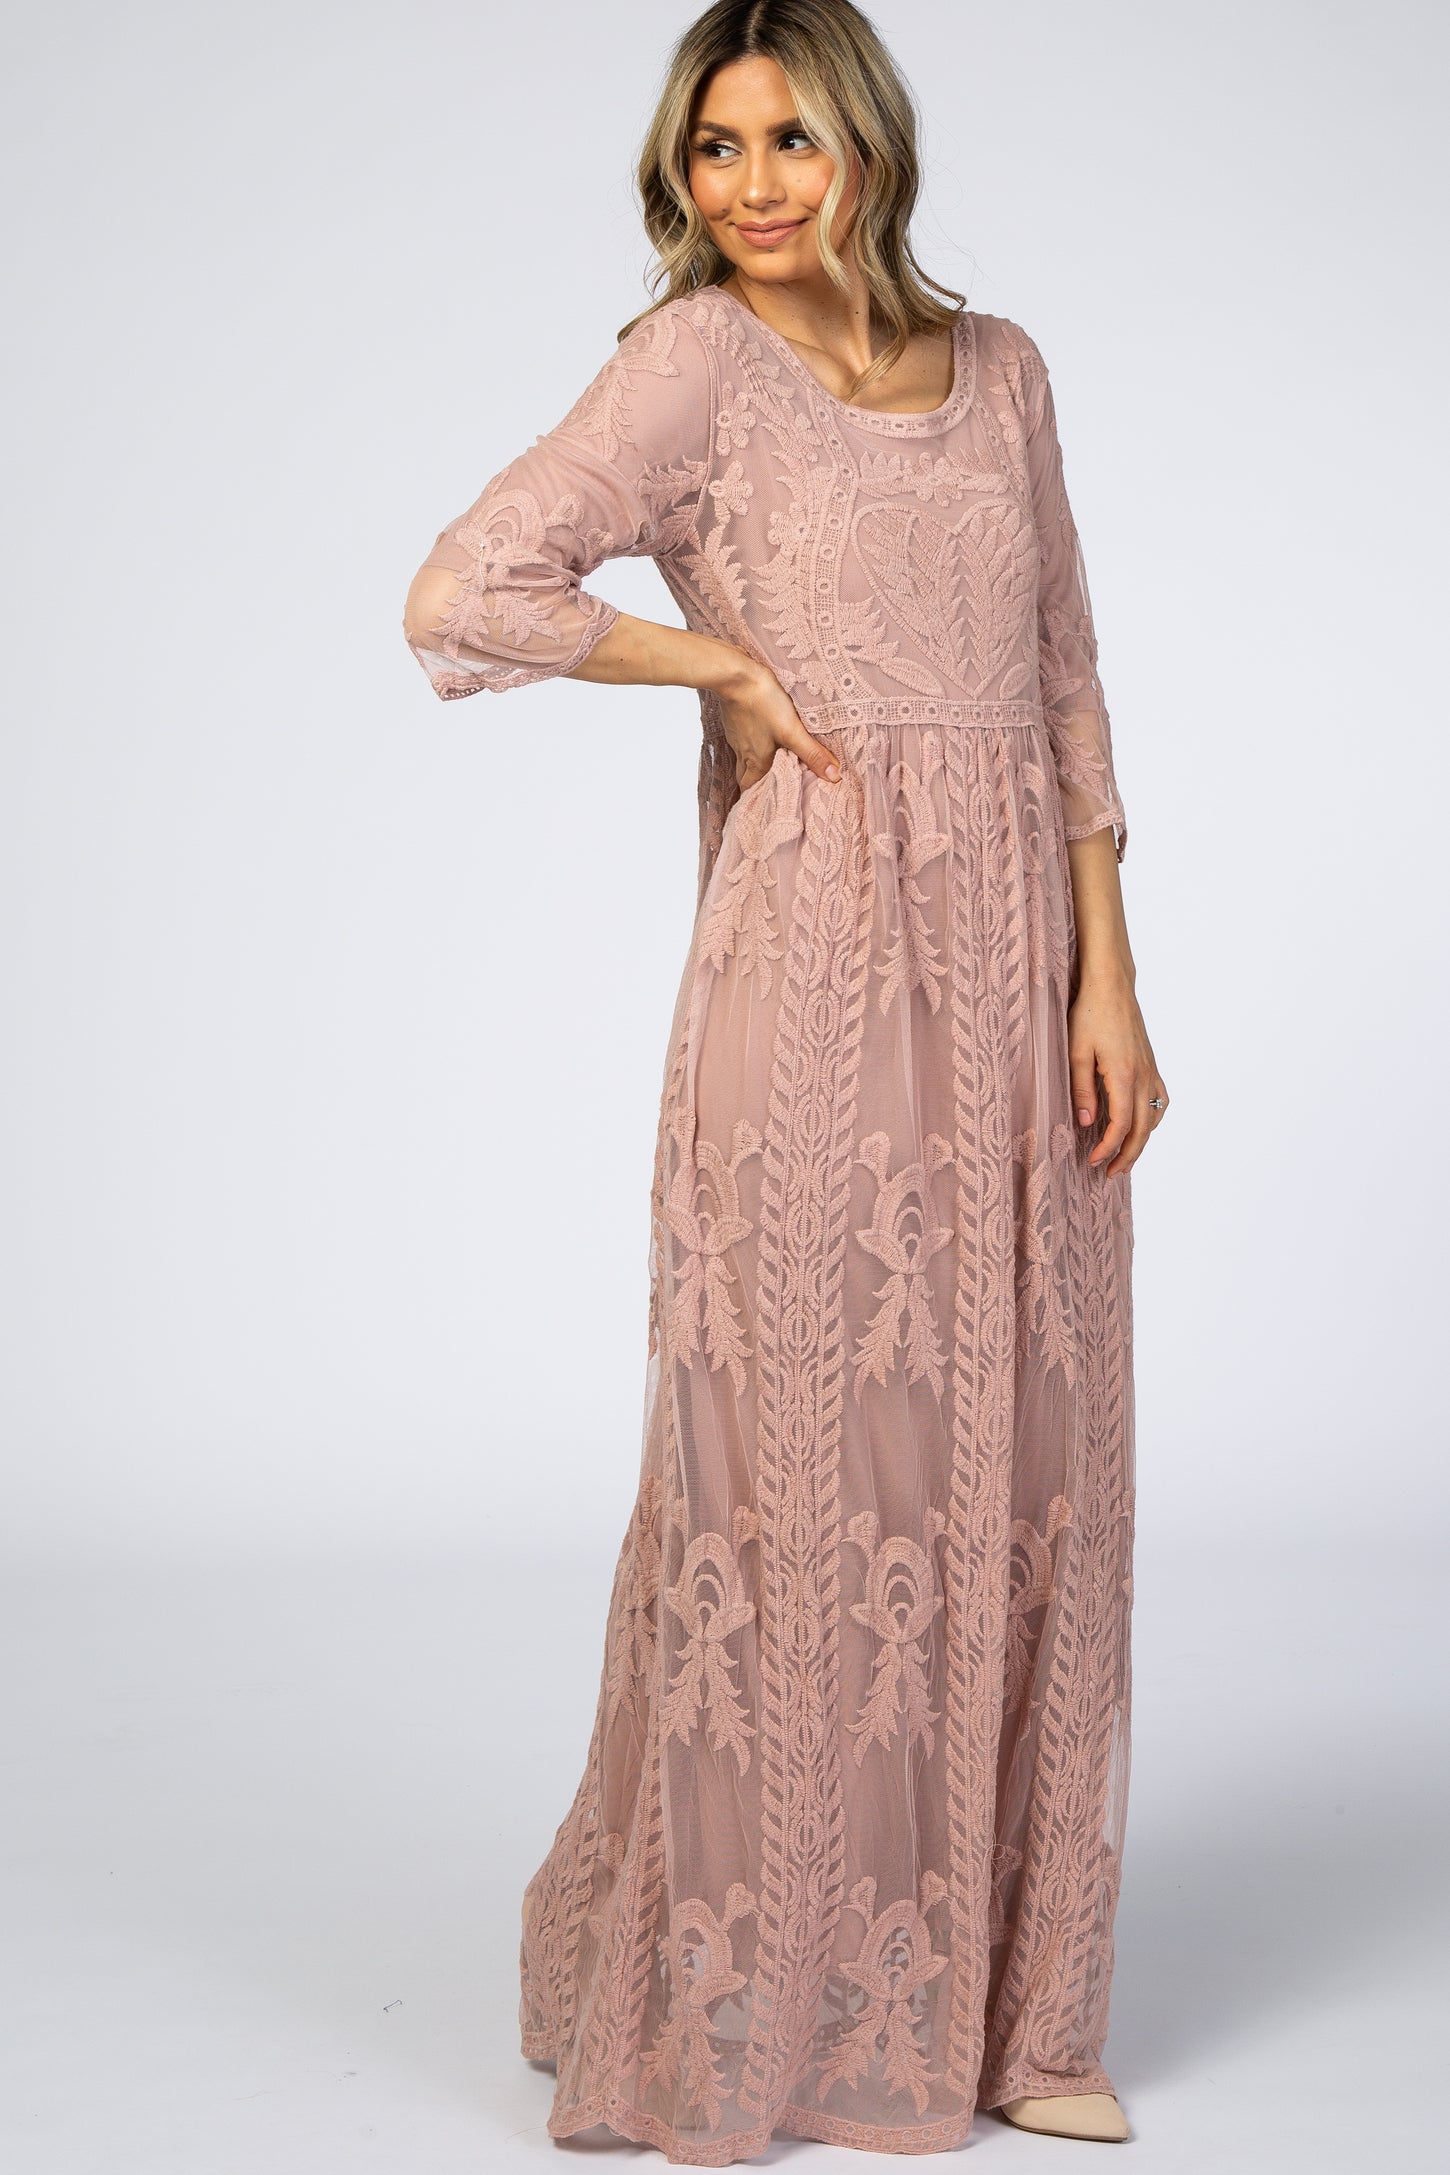 Light Pink Crochet Overlay Maxi Dress